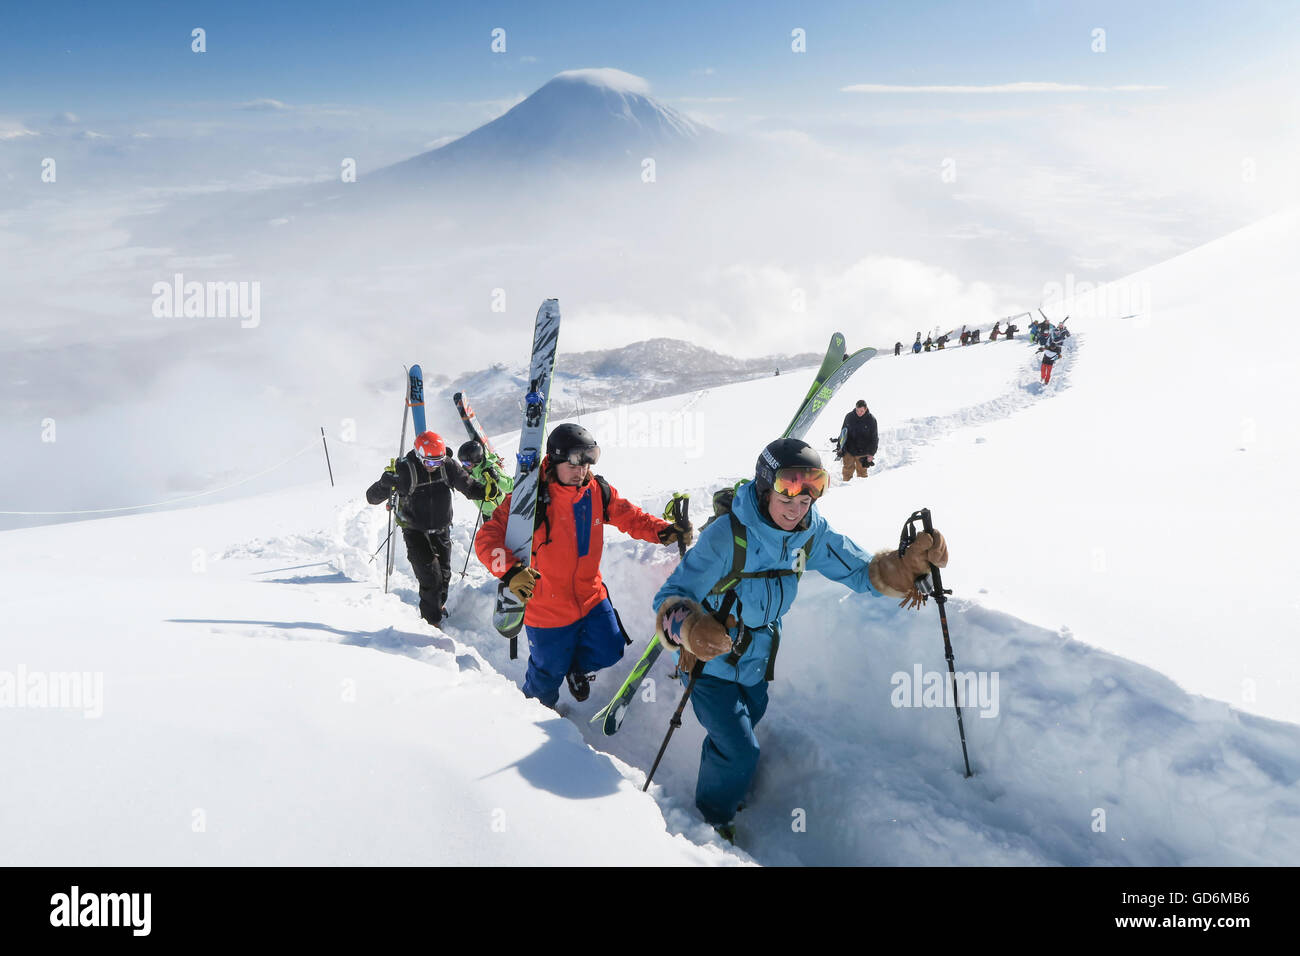 Con el Monte Yotei en el fondo, un grupo de esquiadores de travesía, dirigido por una mujer, son trekking a la cumbre del monte Annupuri, cerca de la estación de esquí de Niseko unida en la isla japonesa de Hokkaido. Los esquís llevan son grandes y amplias permitiendo el invierno en Foto de stock